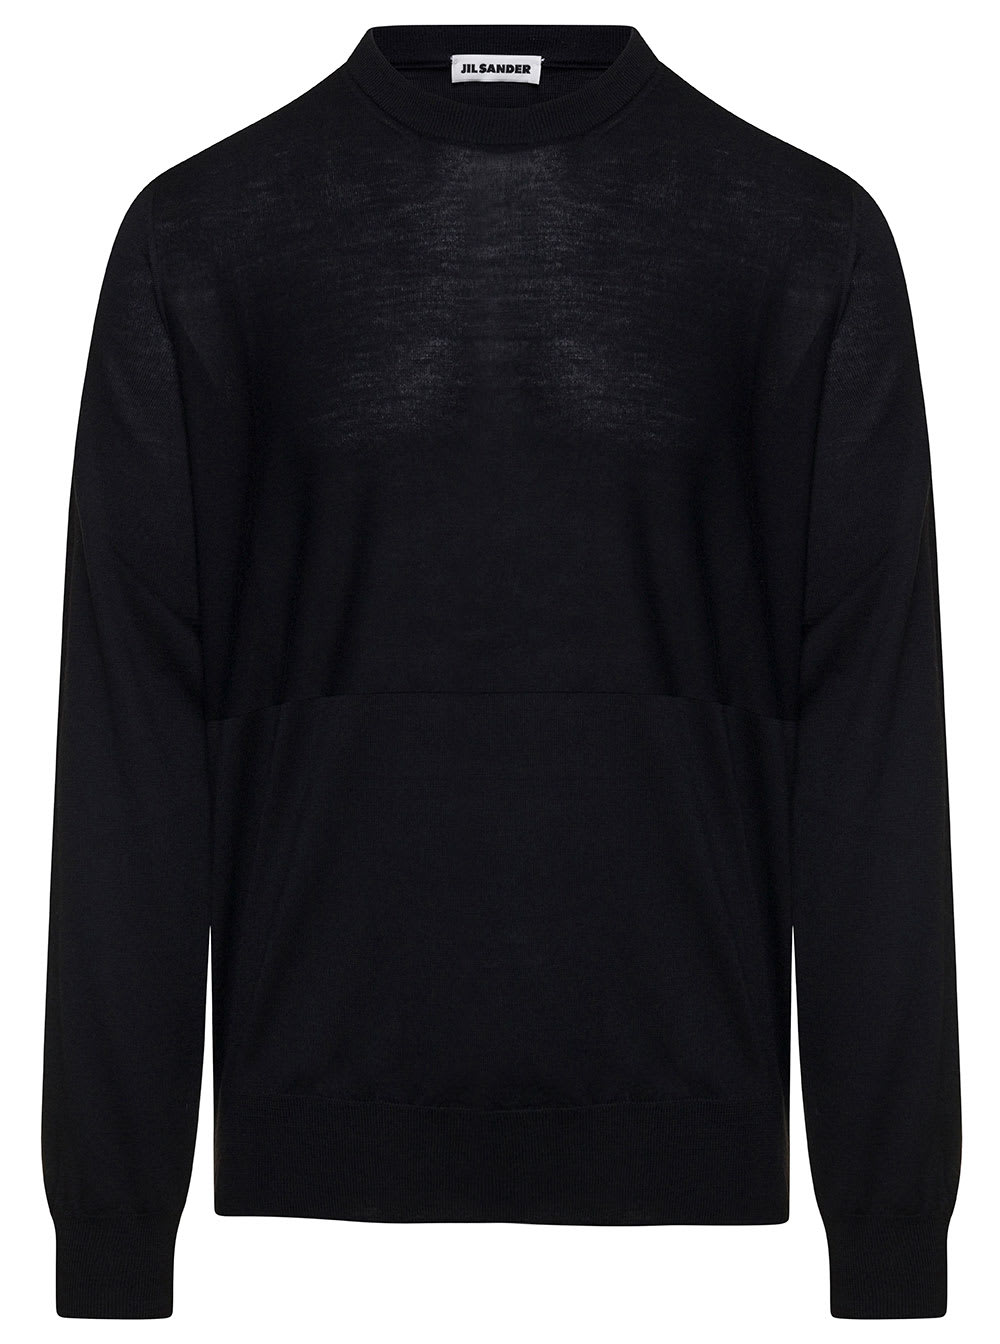 Jil Sander Black Crewneck Sweater With Long Sleeves In Wool Man